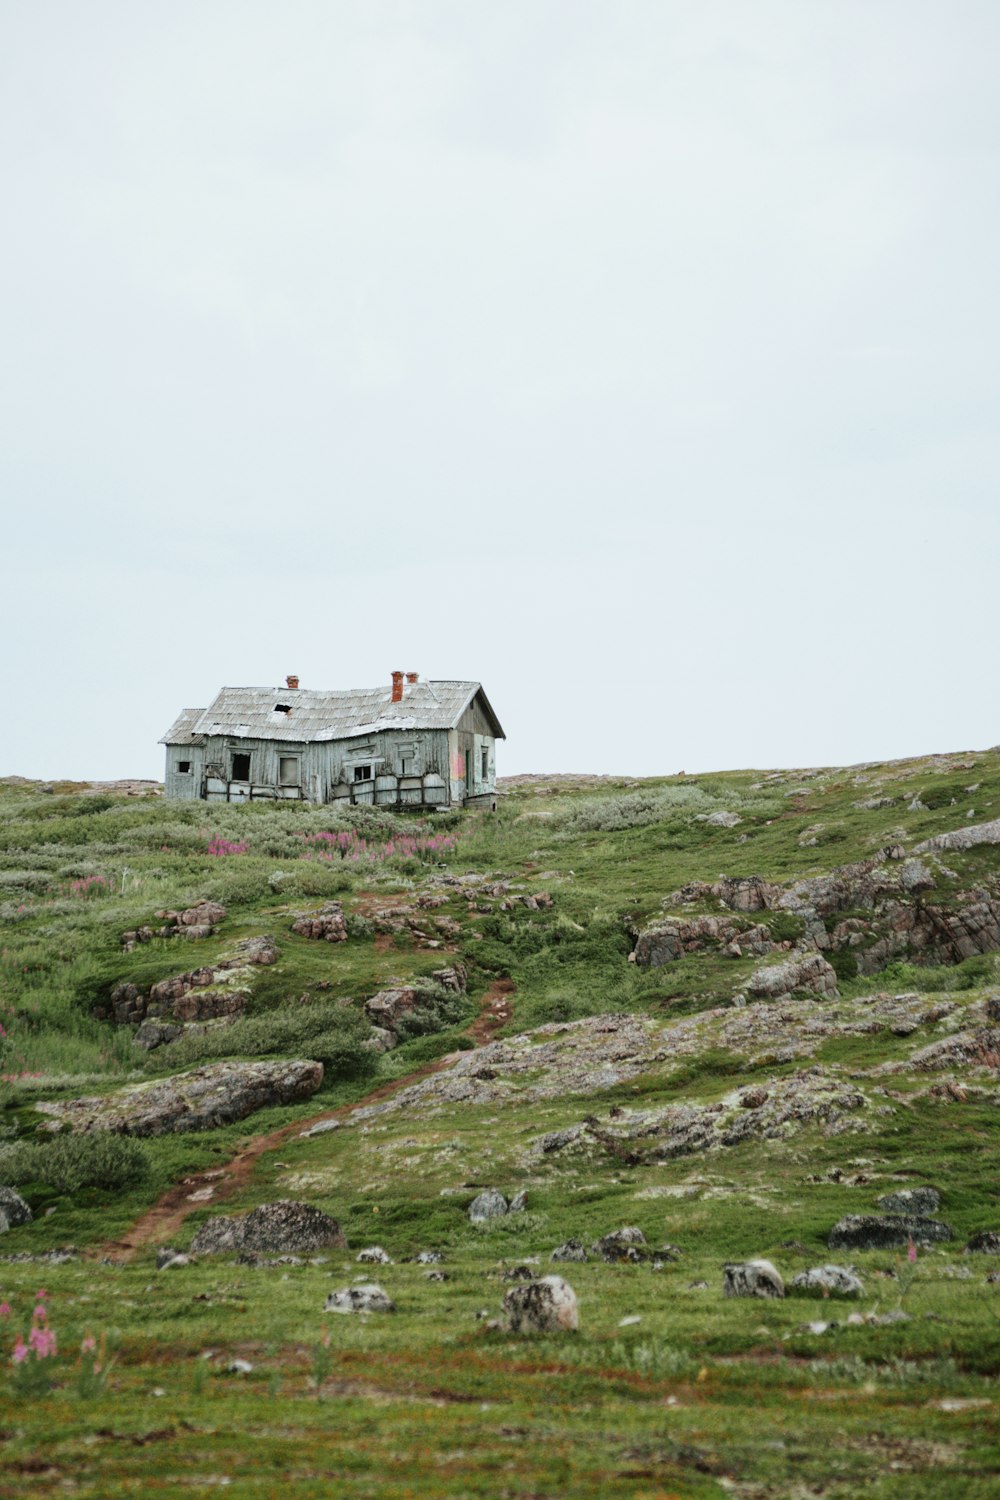 Una casa sentada en la cima de una exuberante ladera verde